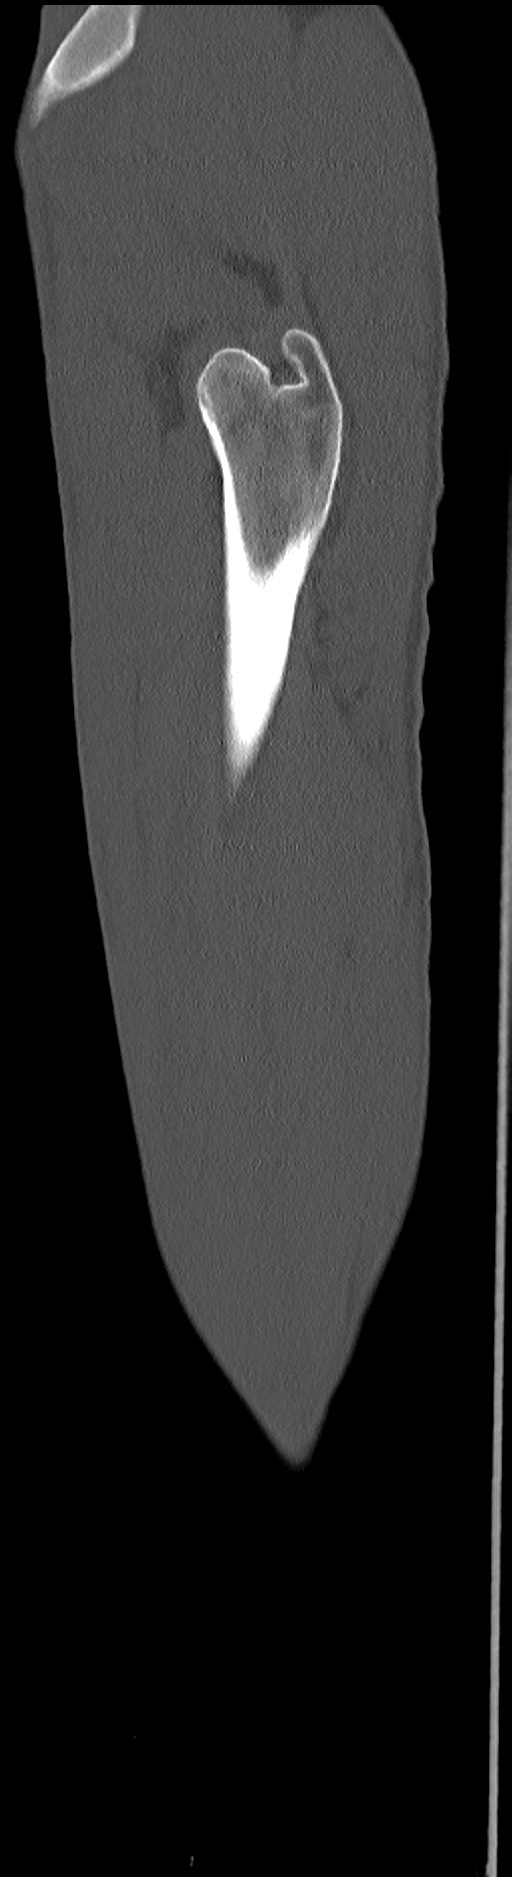 Chronic osteomyelitis (with sequestrum) (Radiopaedia 74813-85822 C 18).jpg